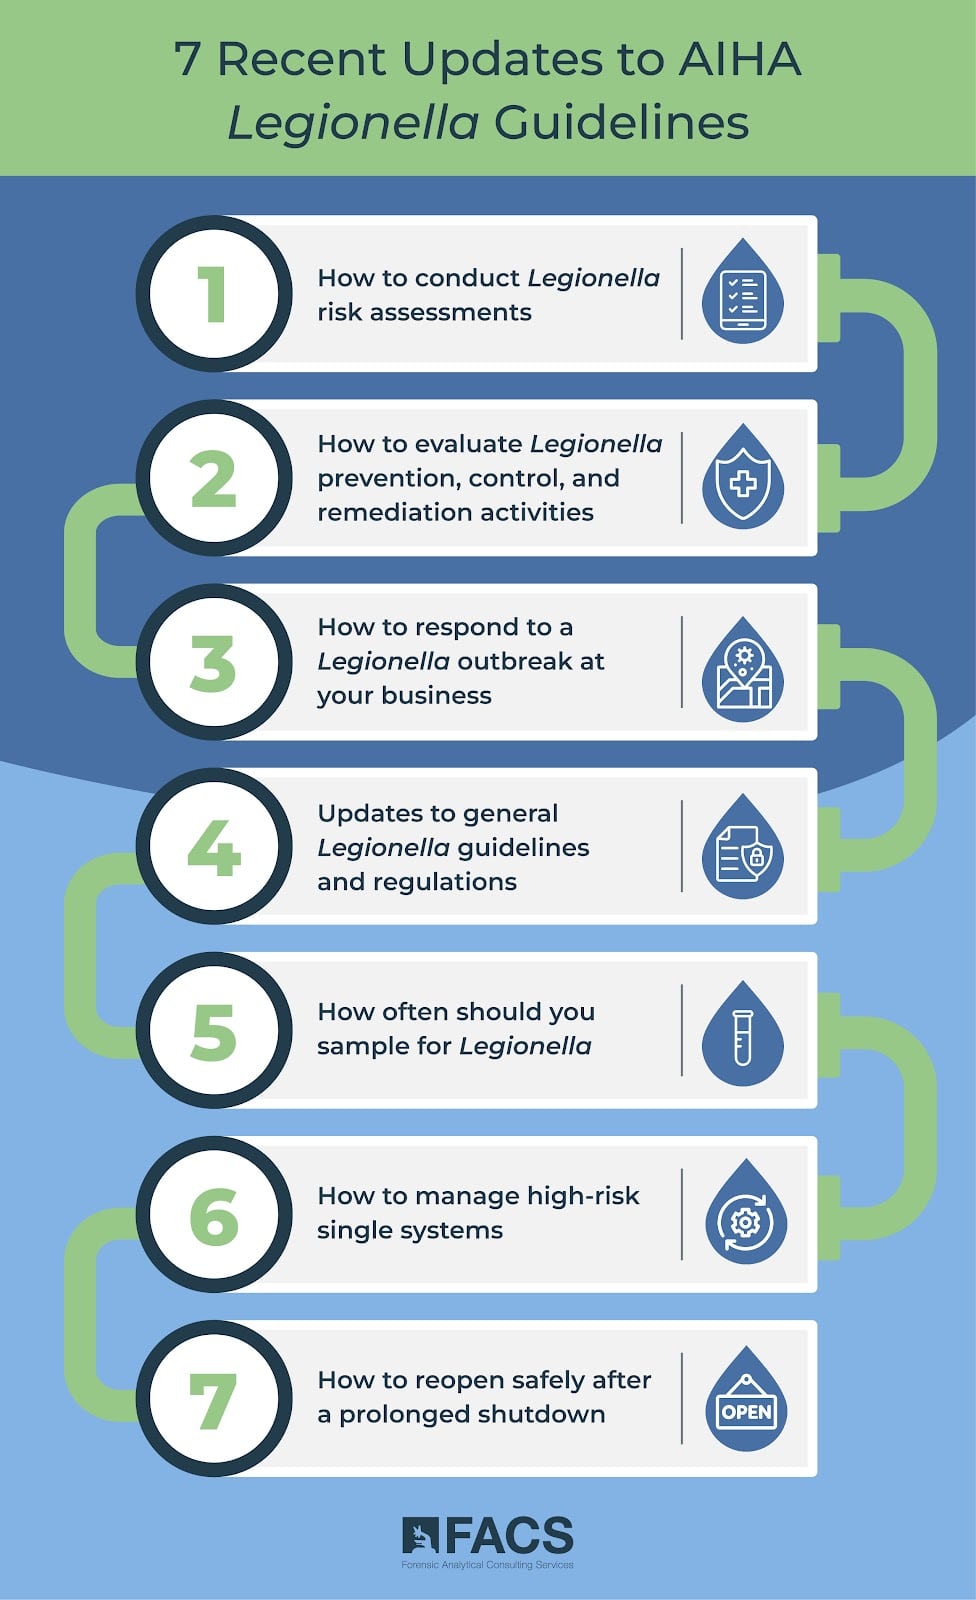 Legionella guidelines updates. Illustration.